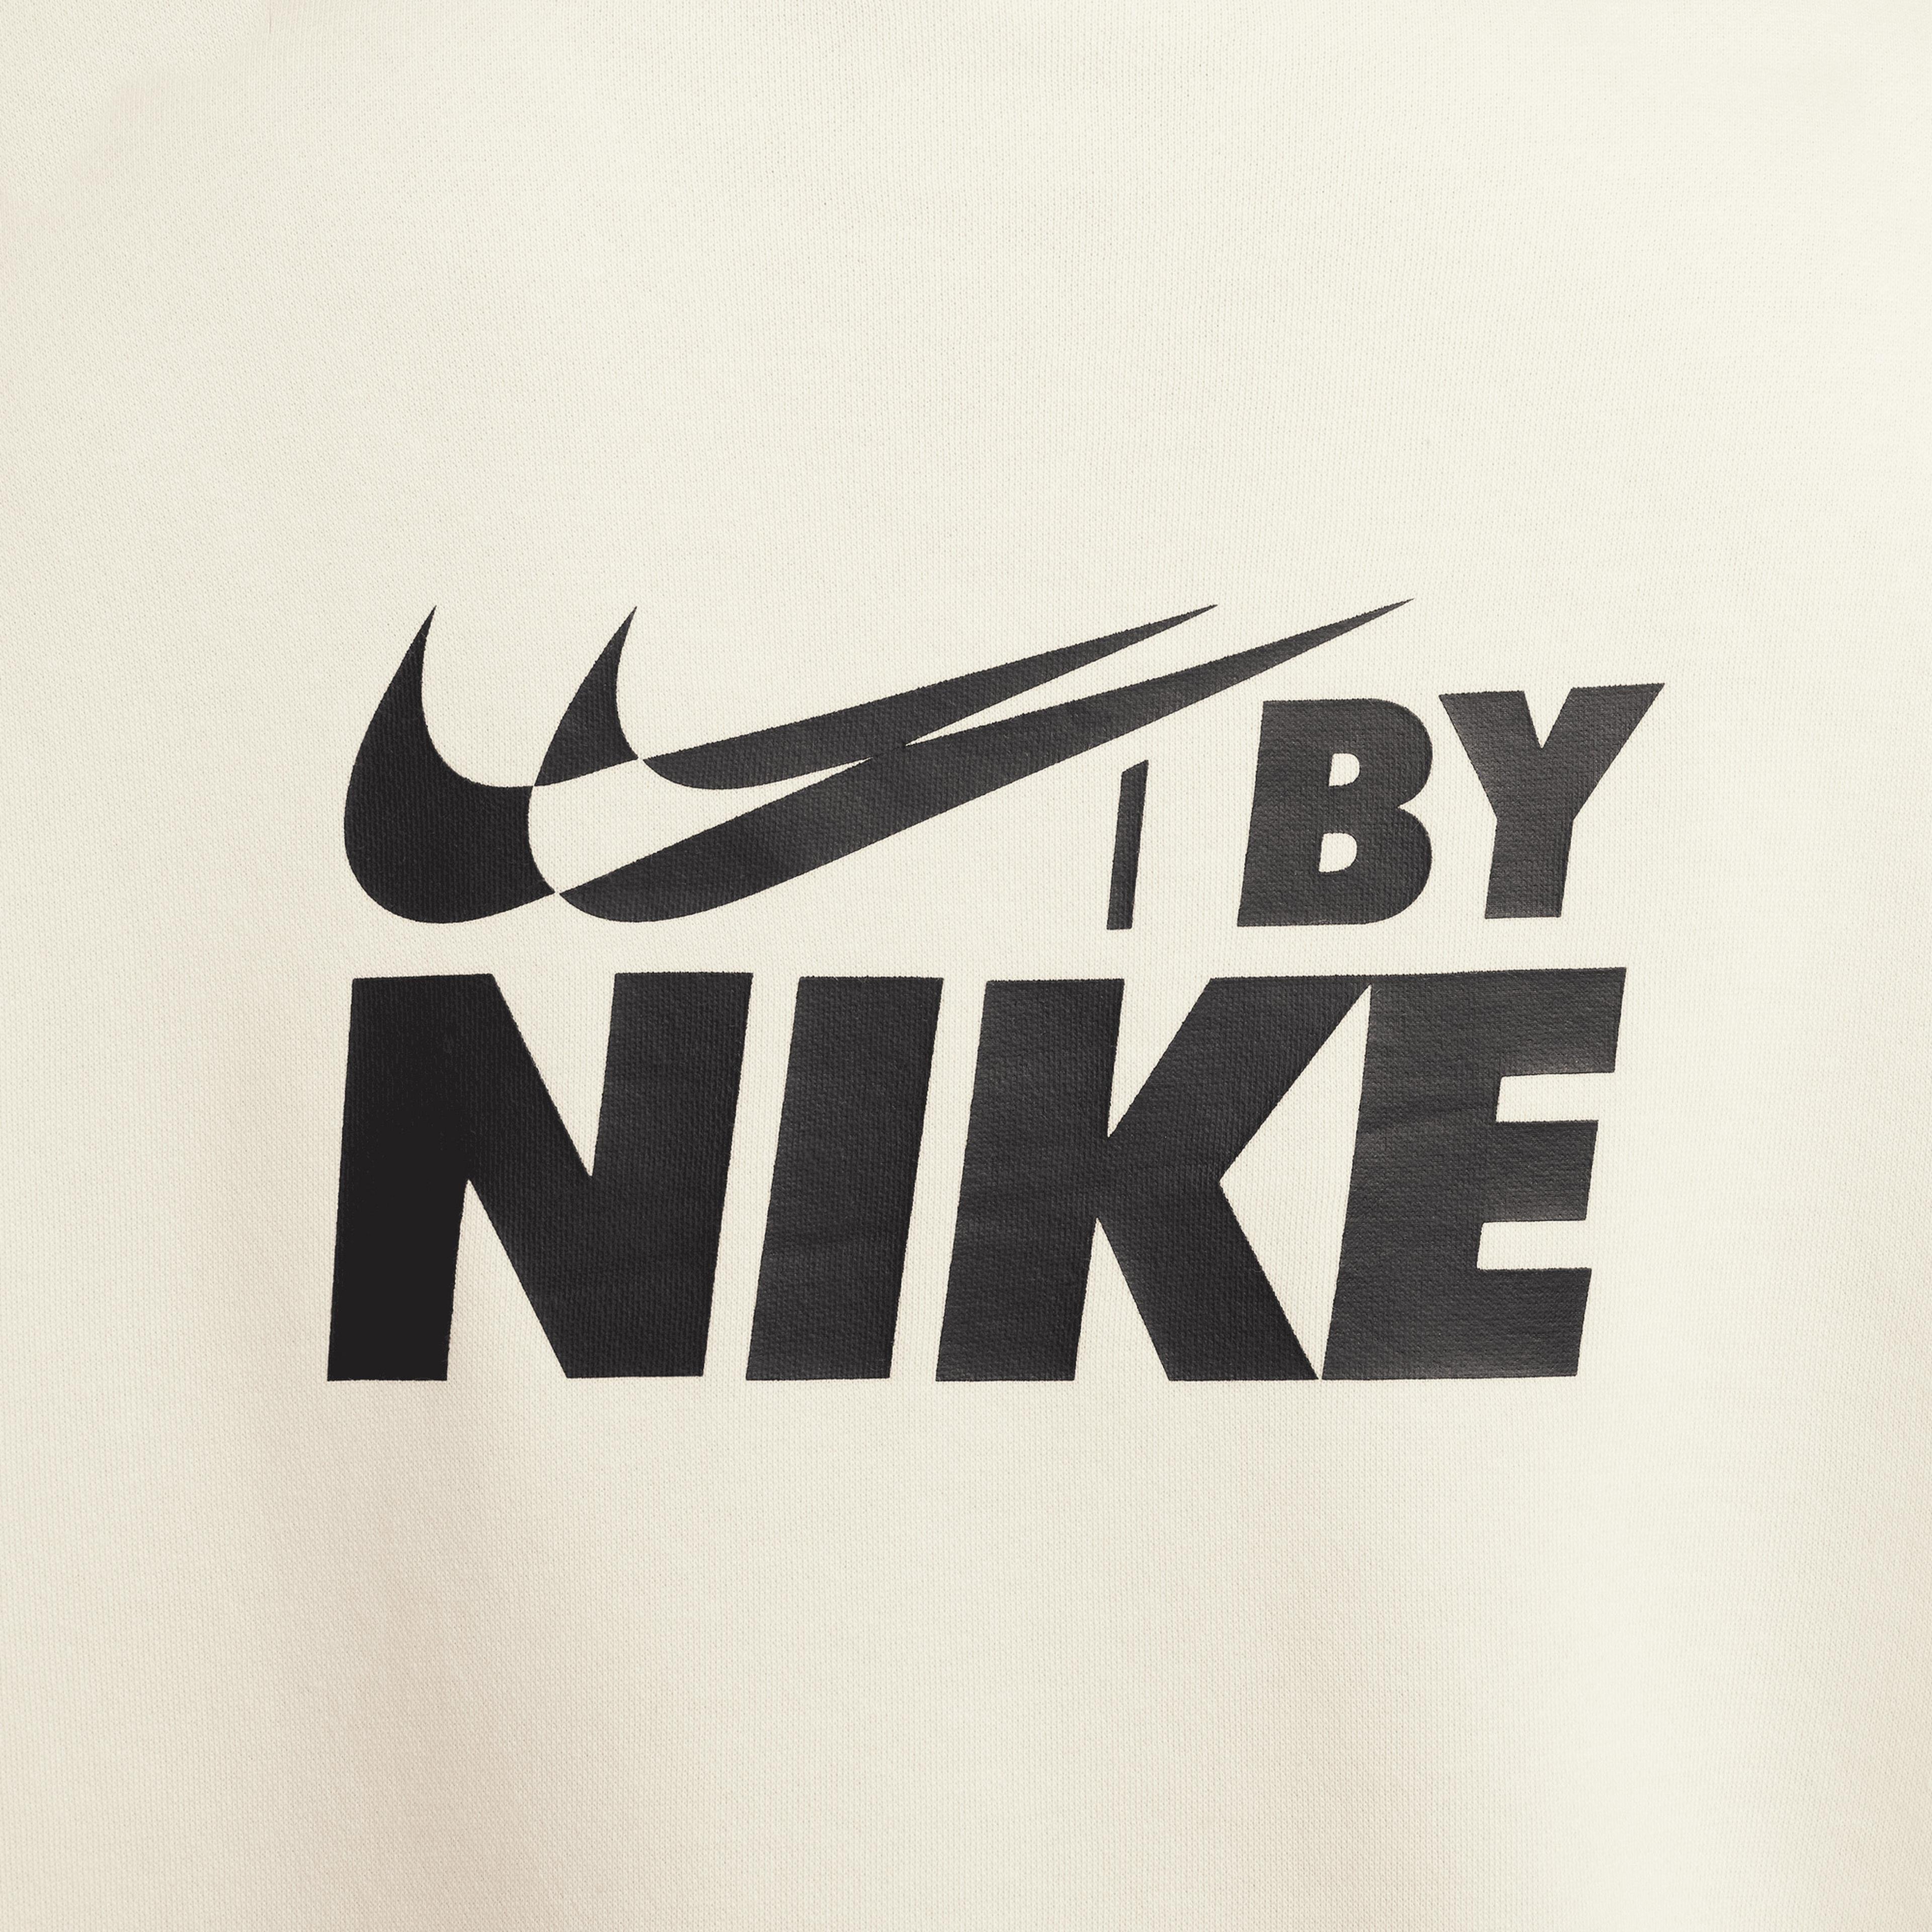 Nike Sportswear Oversized 1/4-Zip Fleece Top Kadın Beyaz Sweatshirt